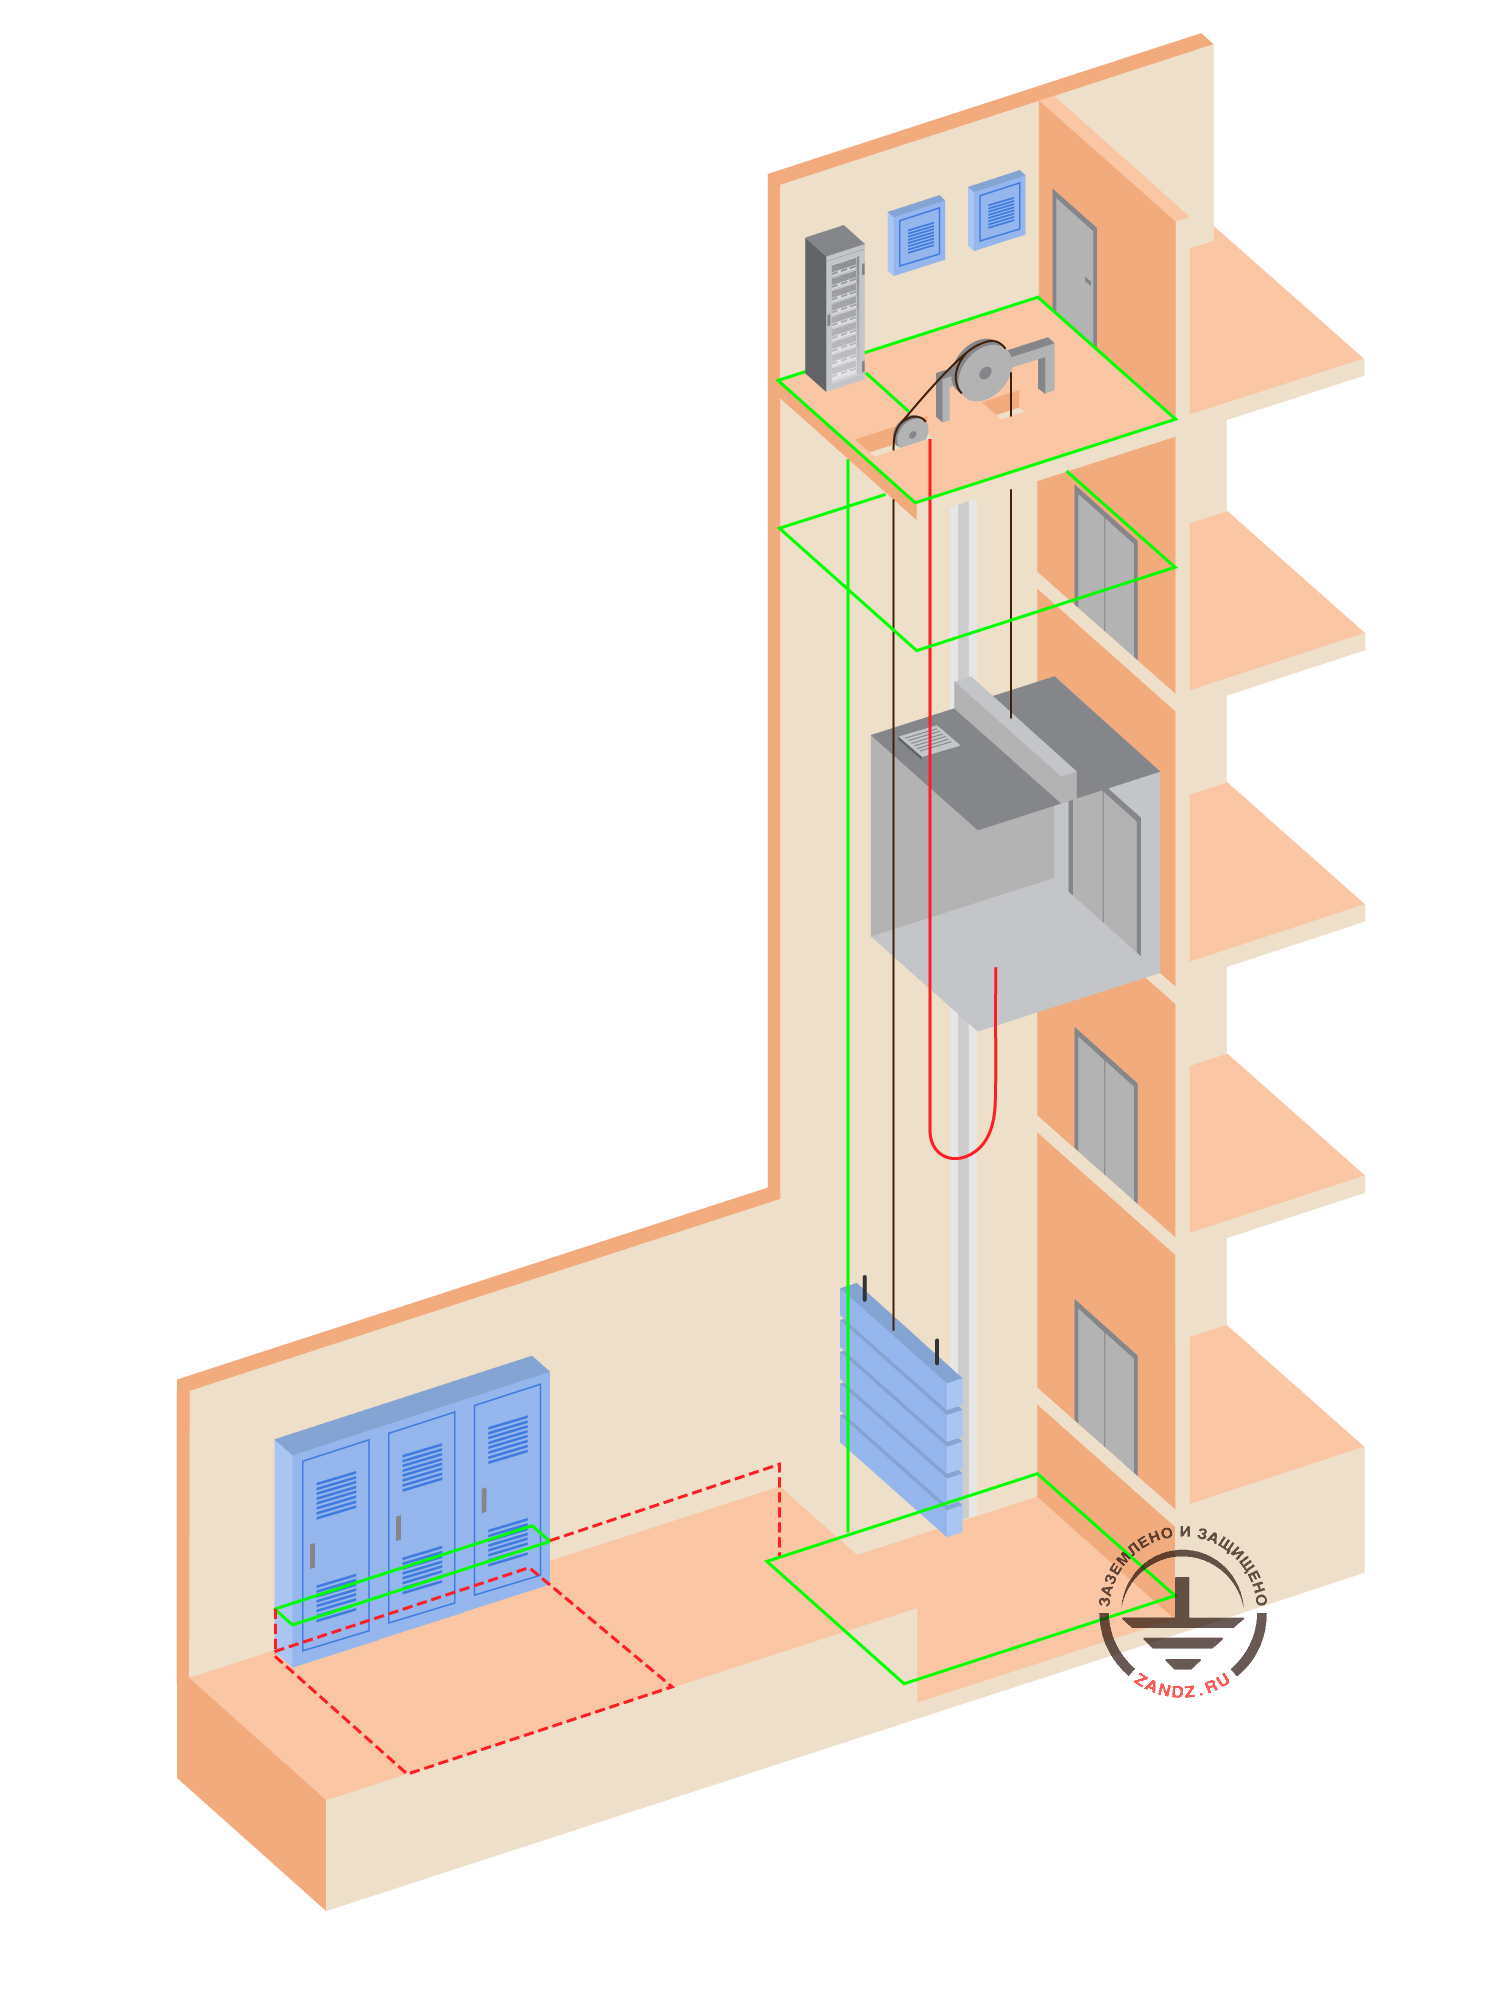 Lift grounding design (lift equipment) in a business center